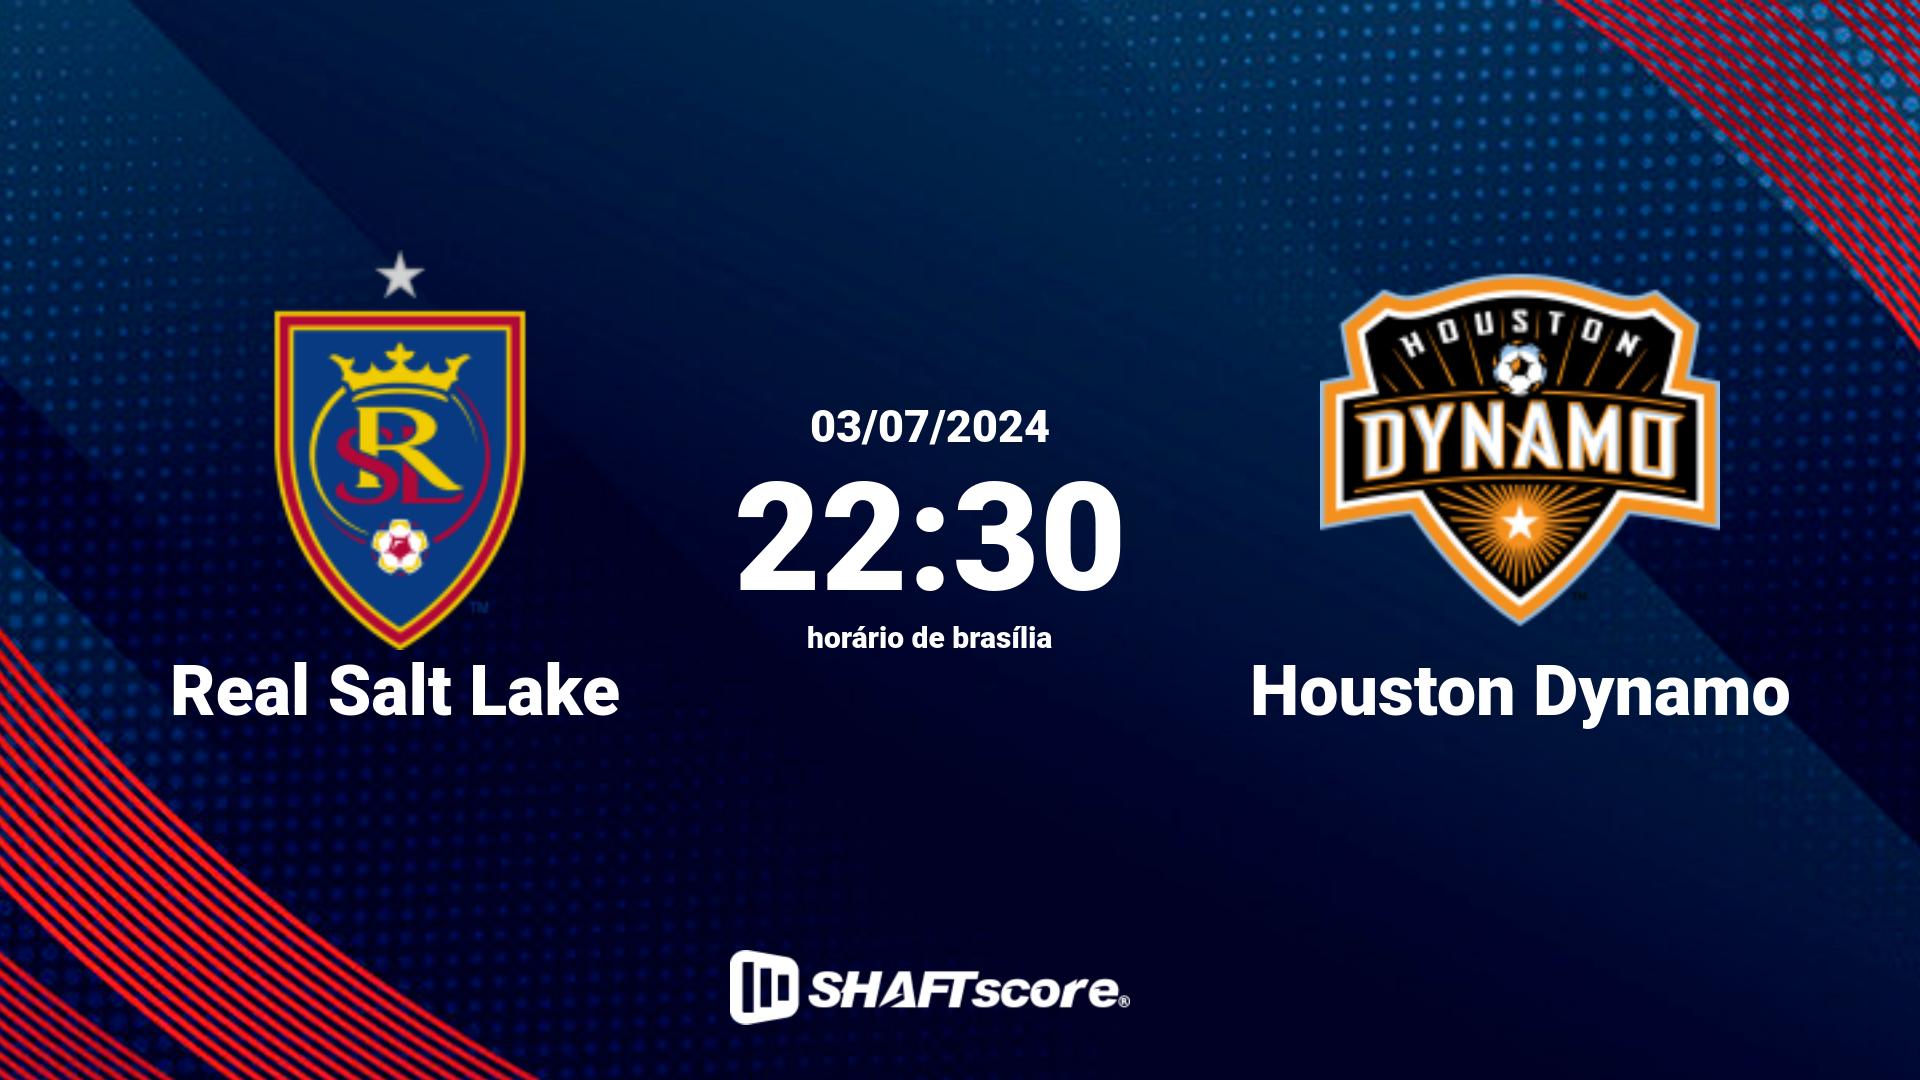 Estatísticas do jogo Real Salt Lake vs Houston Dynamo 03.07 22:30